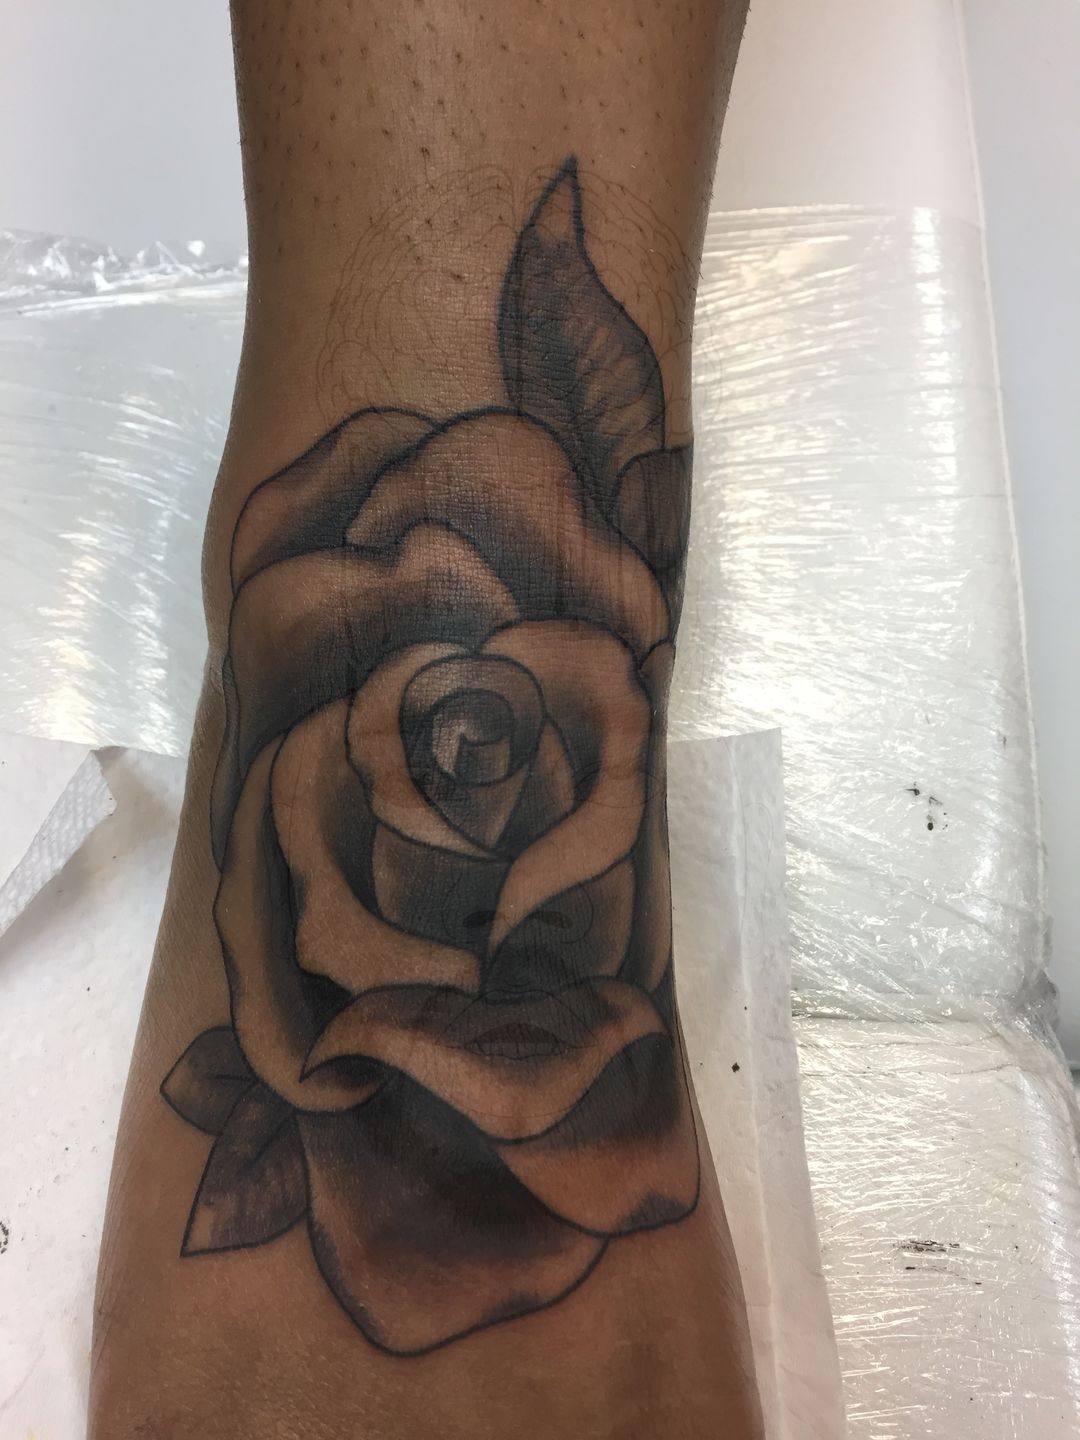 Scar tattoo flower cover up     tattoo tattoos tattooideas  tattoodesigns tattoostyle tattooleg tattooMalaysia  Instagram